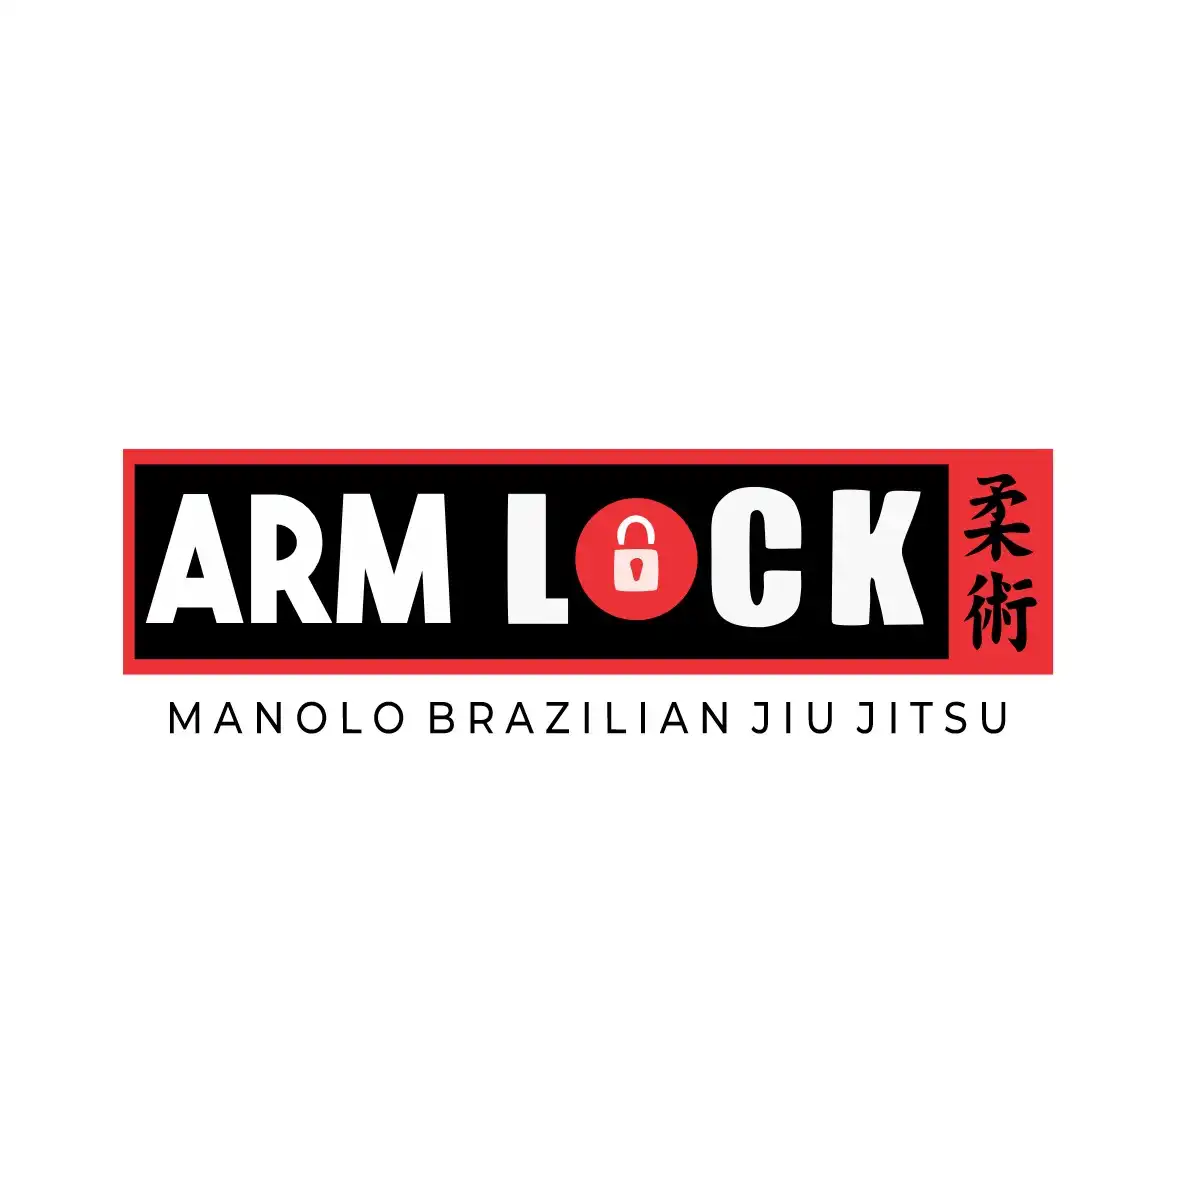 
Logotipo Logomarca Luta Brasileira de Jiu Jitsu



